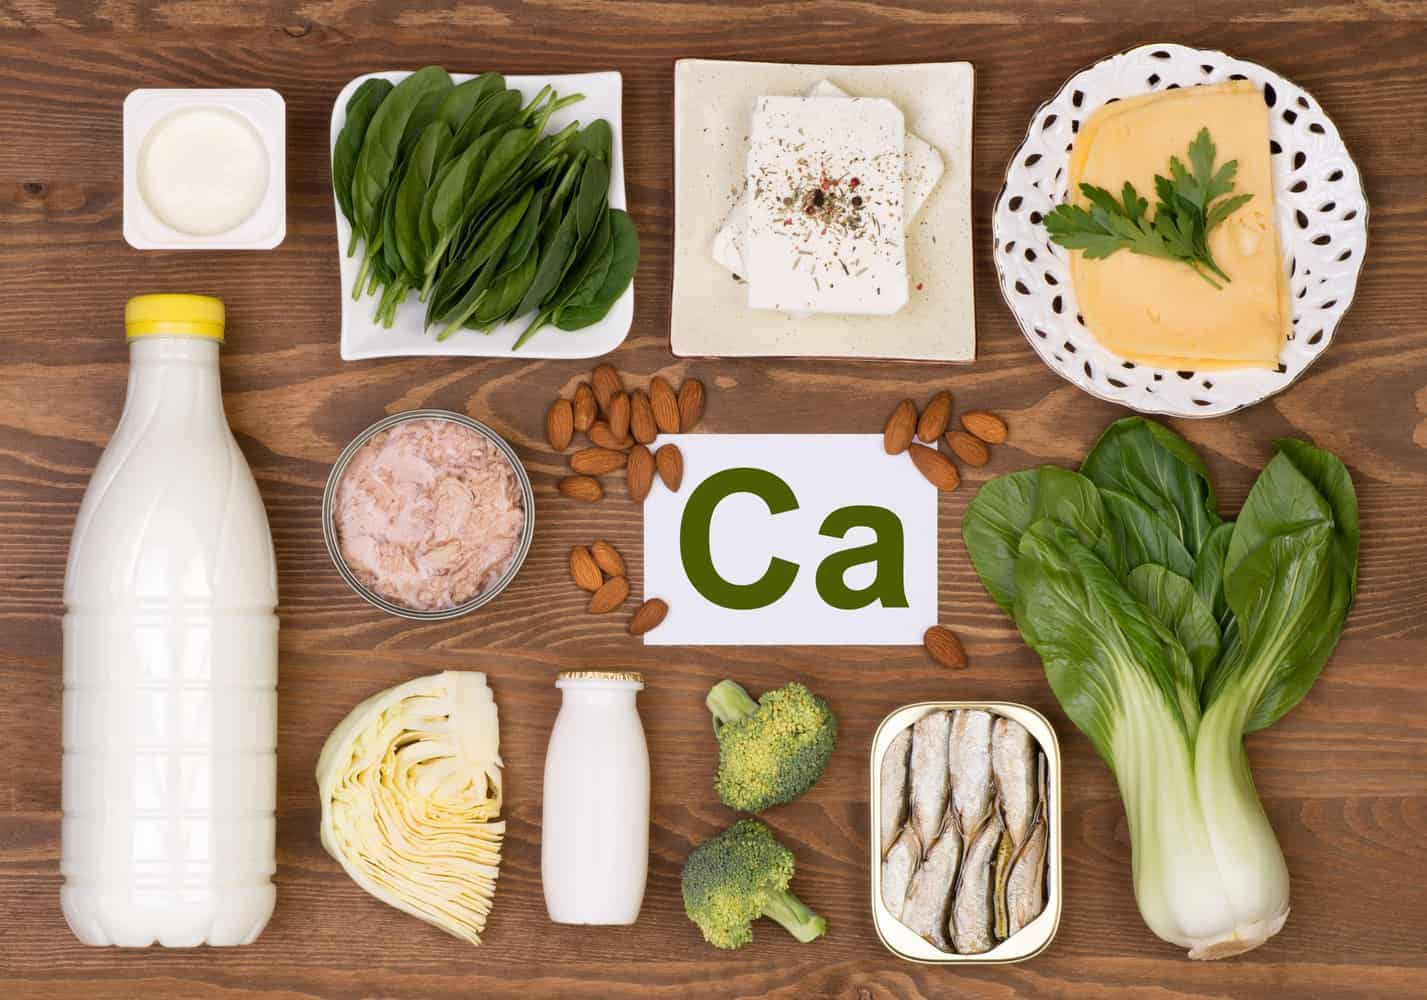 Calcium rich foods around the symbol for Calcium.